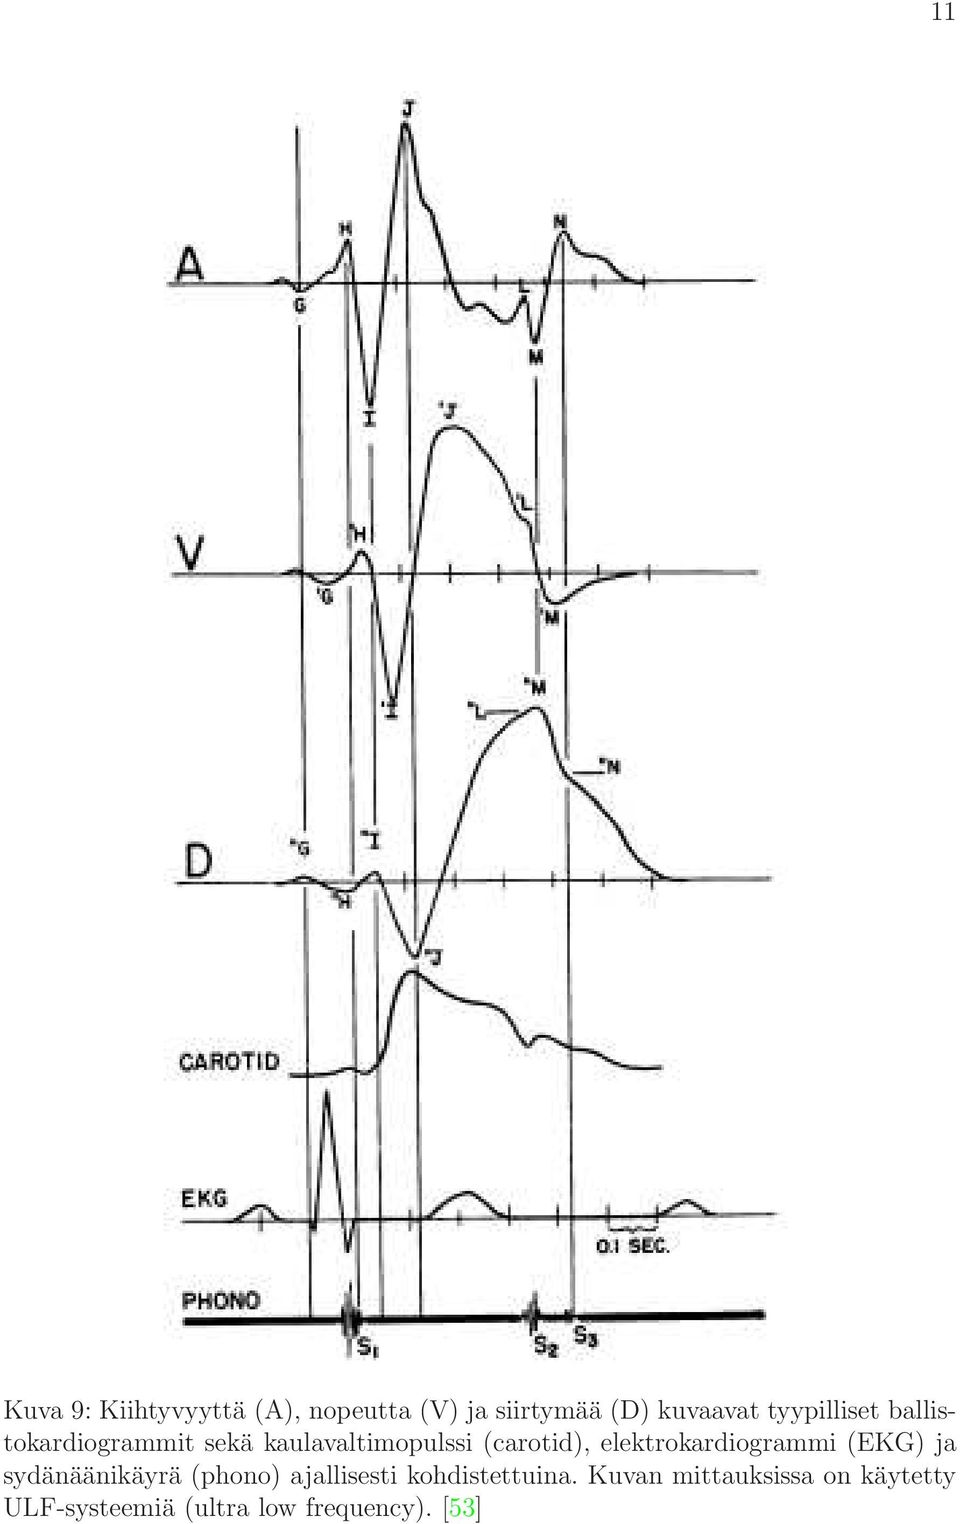 elektrokardiogrammi (EKG) ja sydänäänikäyrä (phono) ajallisesti